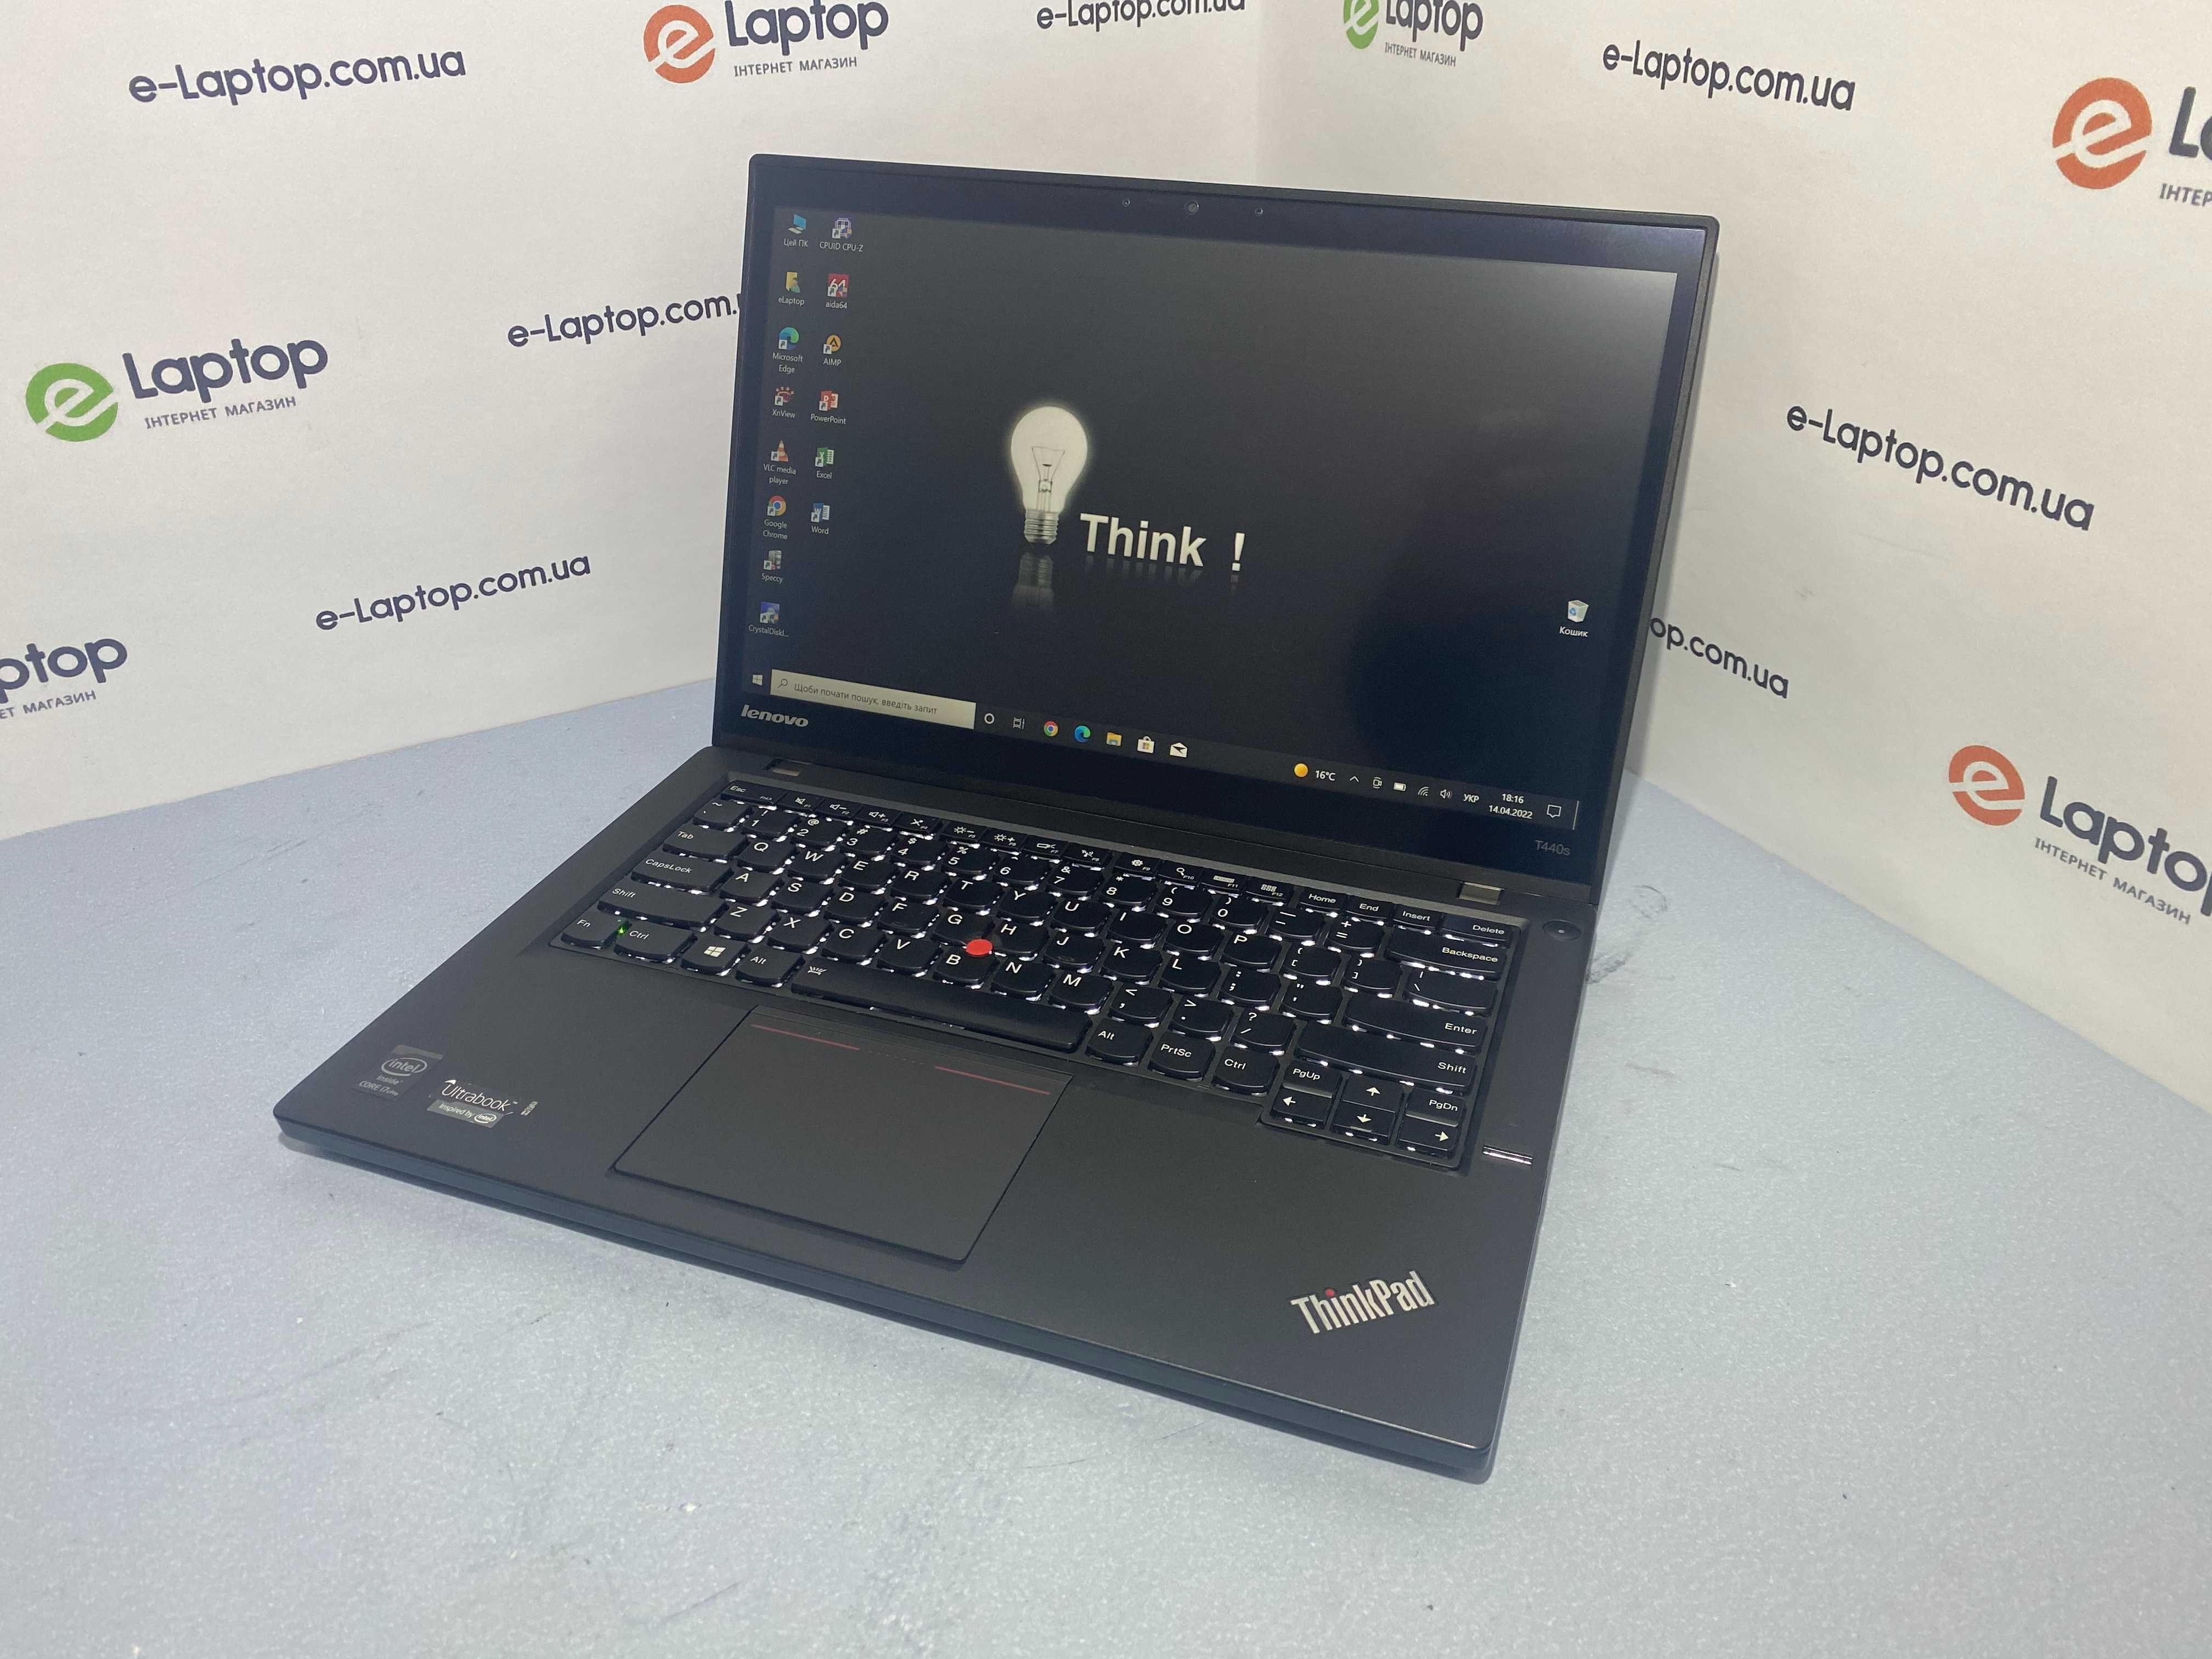 Lenovo ThinkPad T440s/i7-4600U/8GB/SSD 240GB(new)/14.1"FHD,Touch/Win10